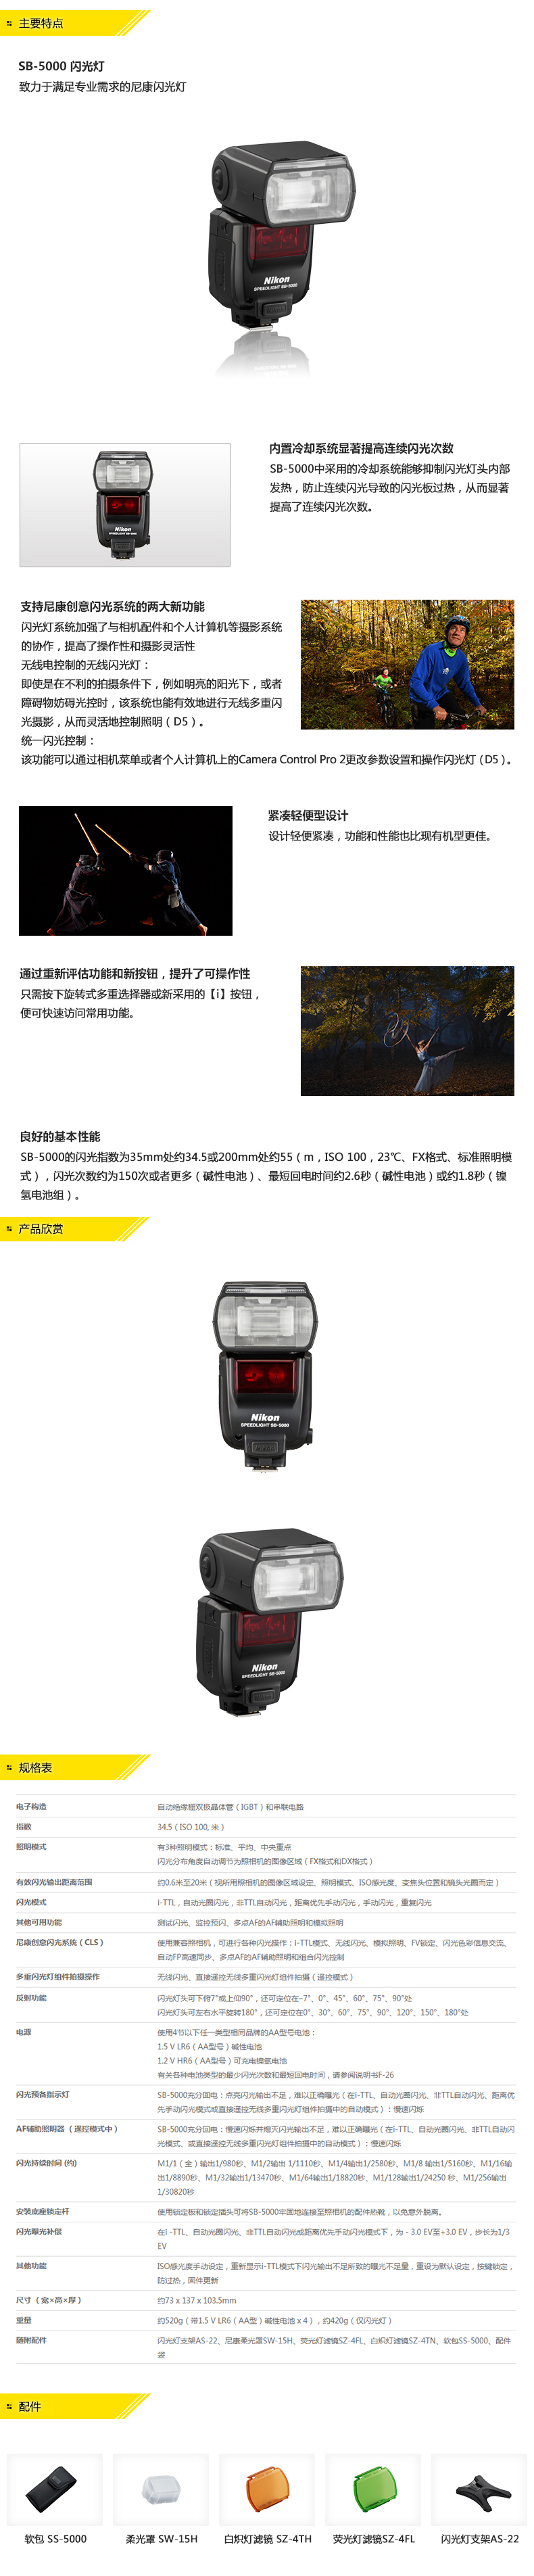 尼康 (Nikon) SB-5000 闪光灯 适用于尼康单反相机